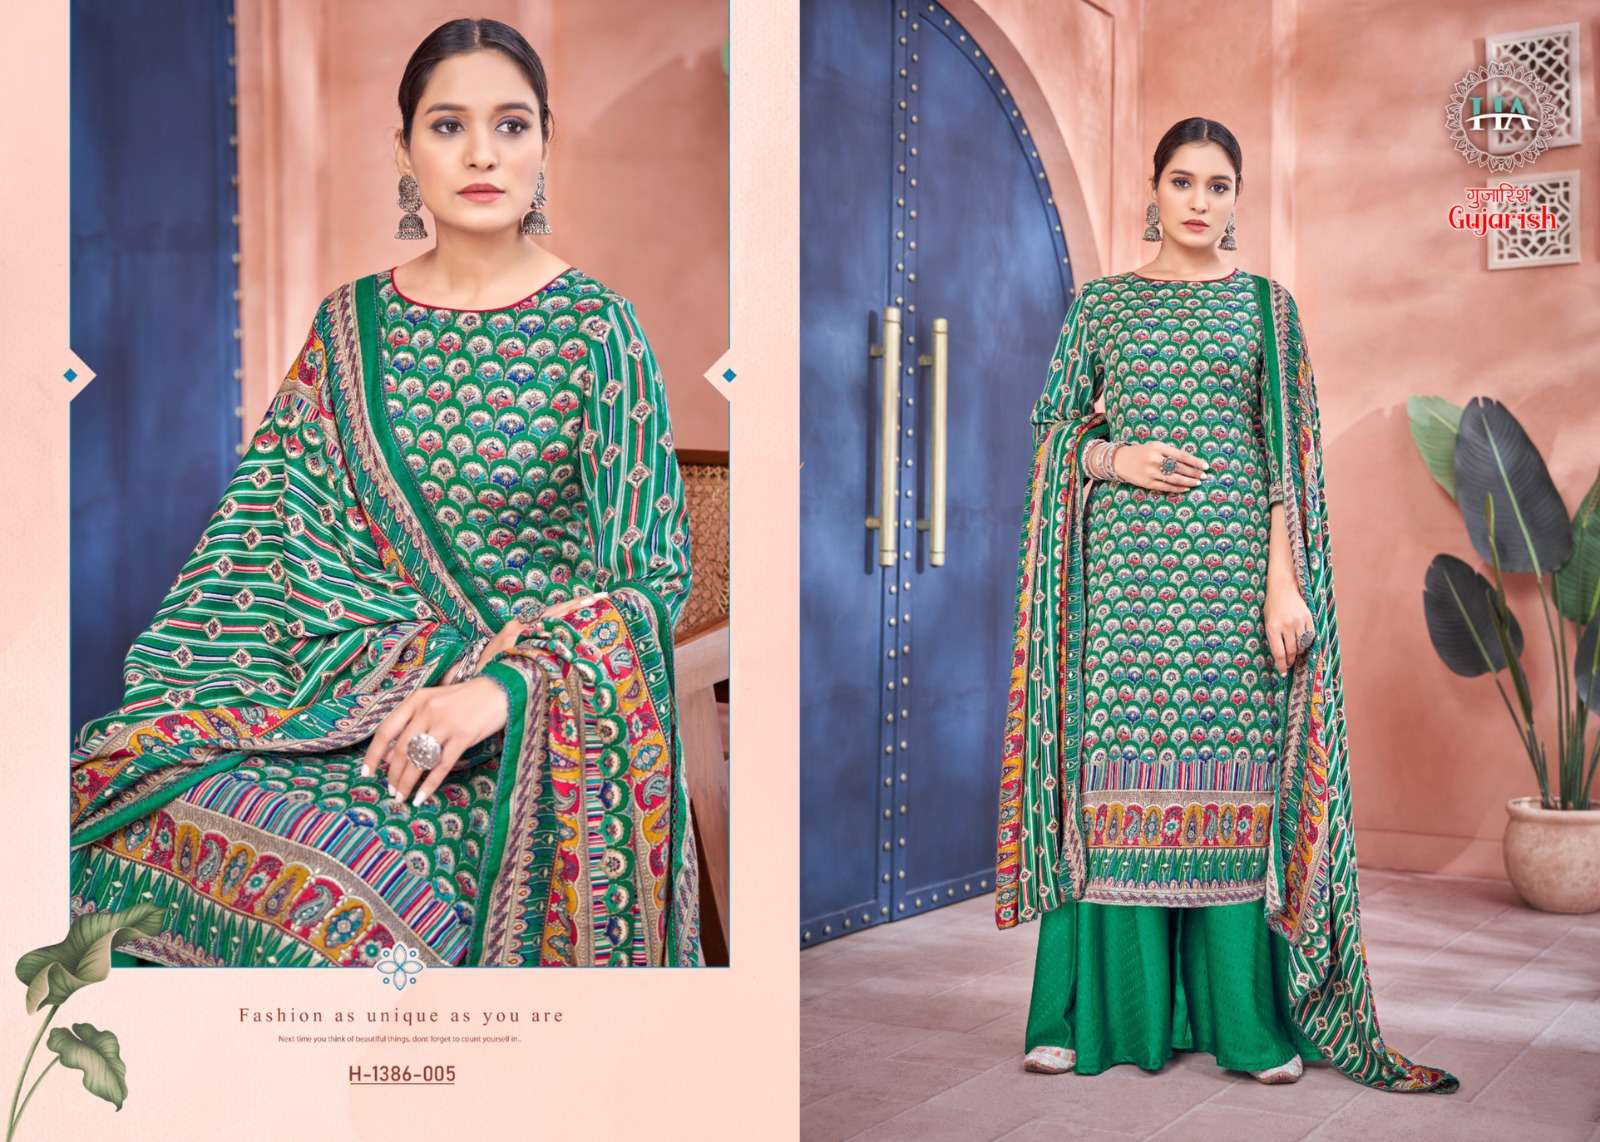 harshit fashion gujarish designer plazzo salwar kameez at wholesale price surat